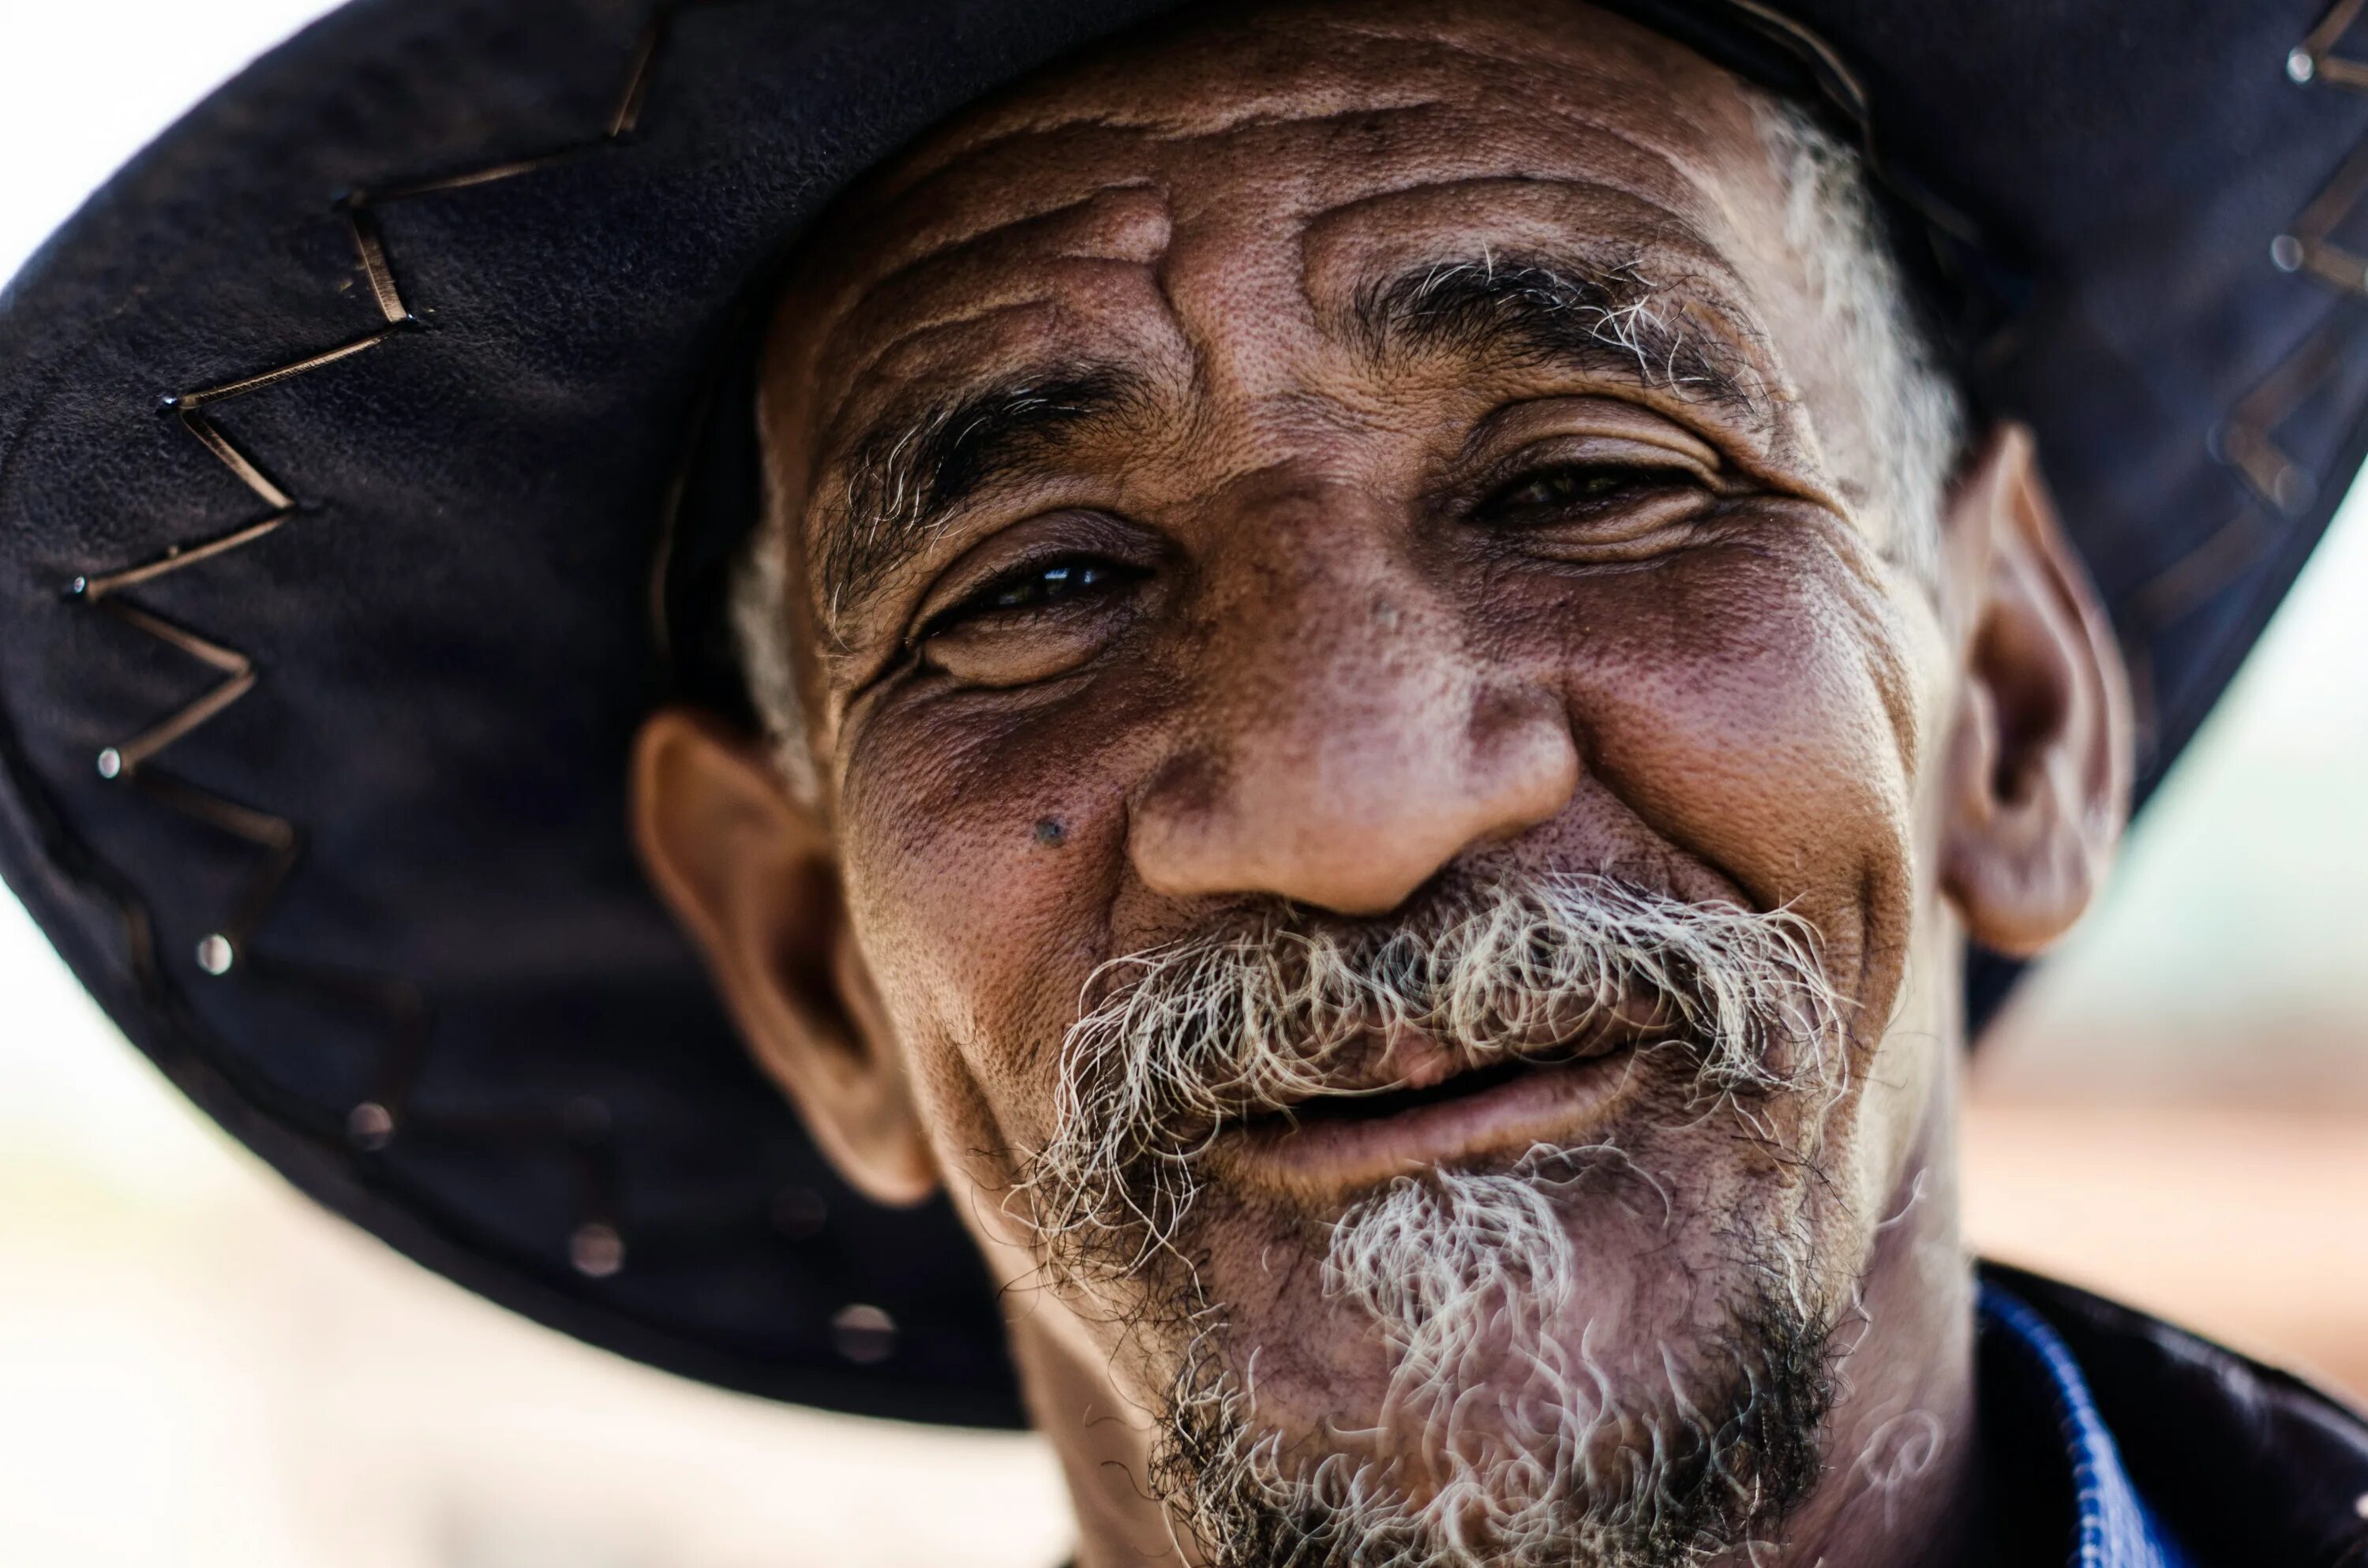 Старый мексиканец. Лицо человека. Мексиканский старик. Старый мексиканец в шляпе. На востоке живешь весь